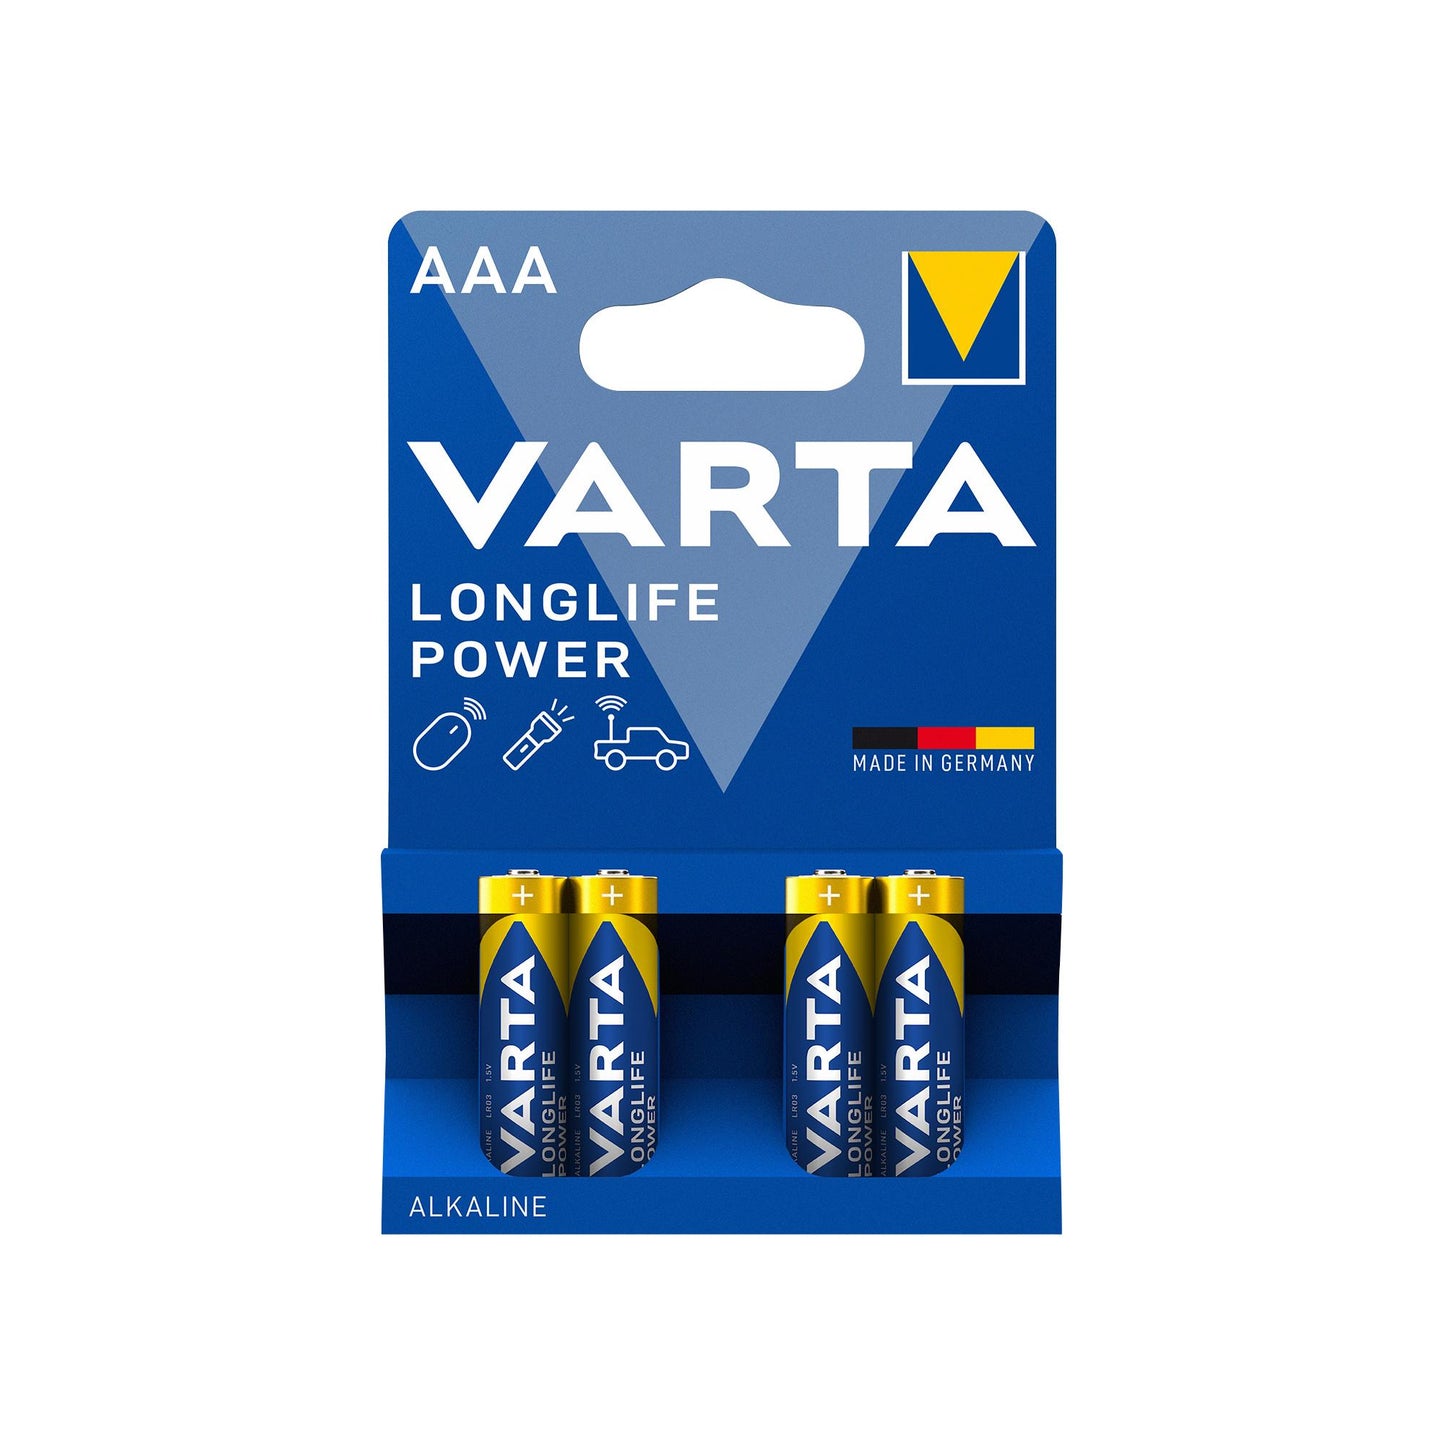 VARTA Batterie Alkaline Micro AAA LR03, 1.5V Longlife Power, Retail Blister (4-Pack)